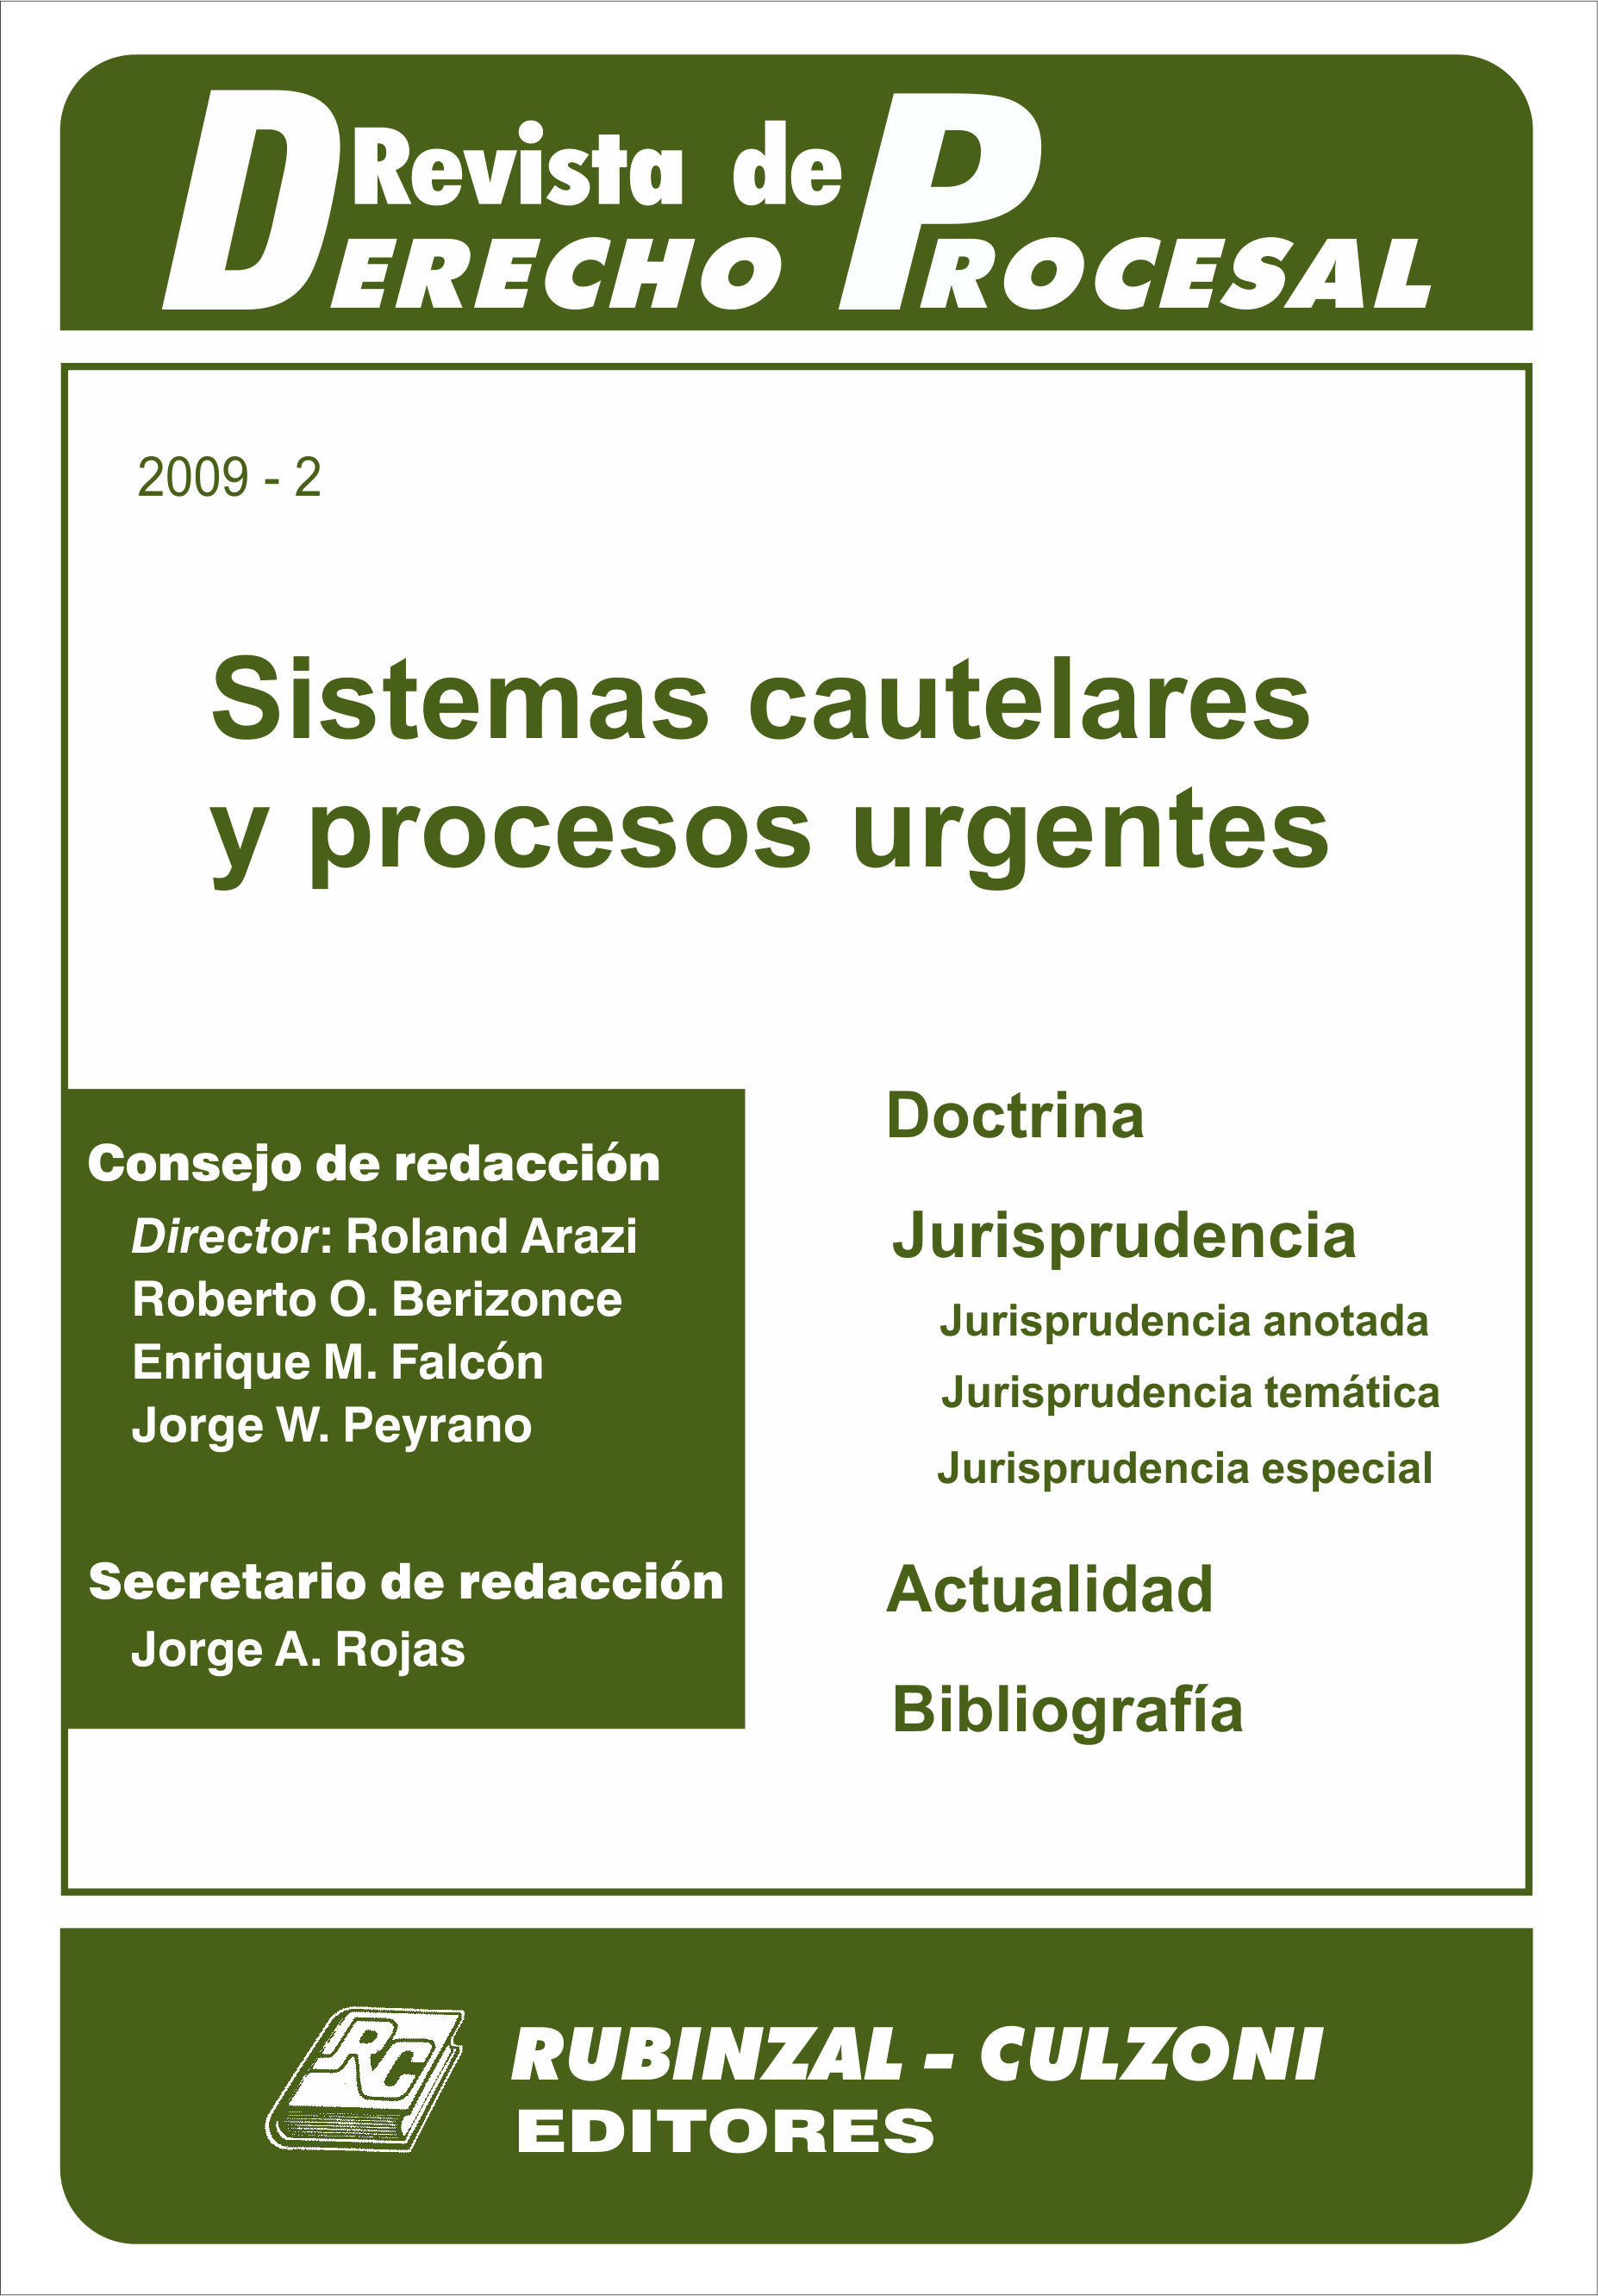 Revista de Derecho Procesal - Sistemas cautelares y procesos urgentes.